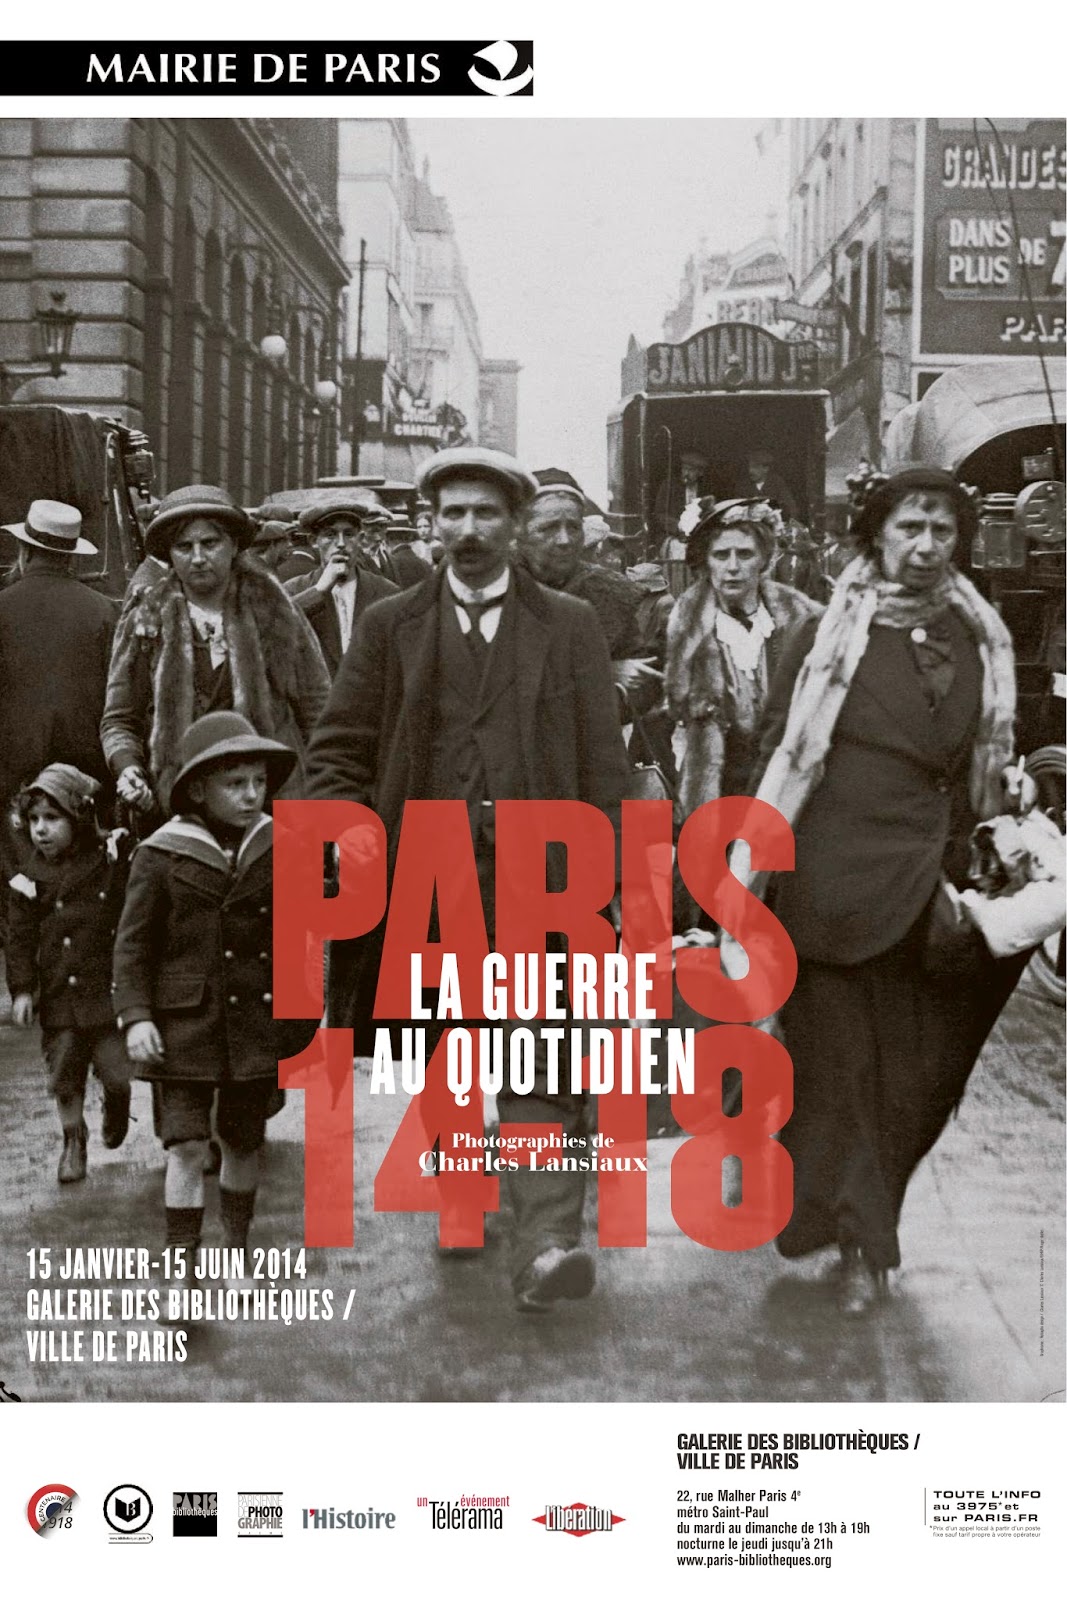 http://www.paris-bibliotheques.org/expositions/paris-1418-guerre-au-quotidien/